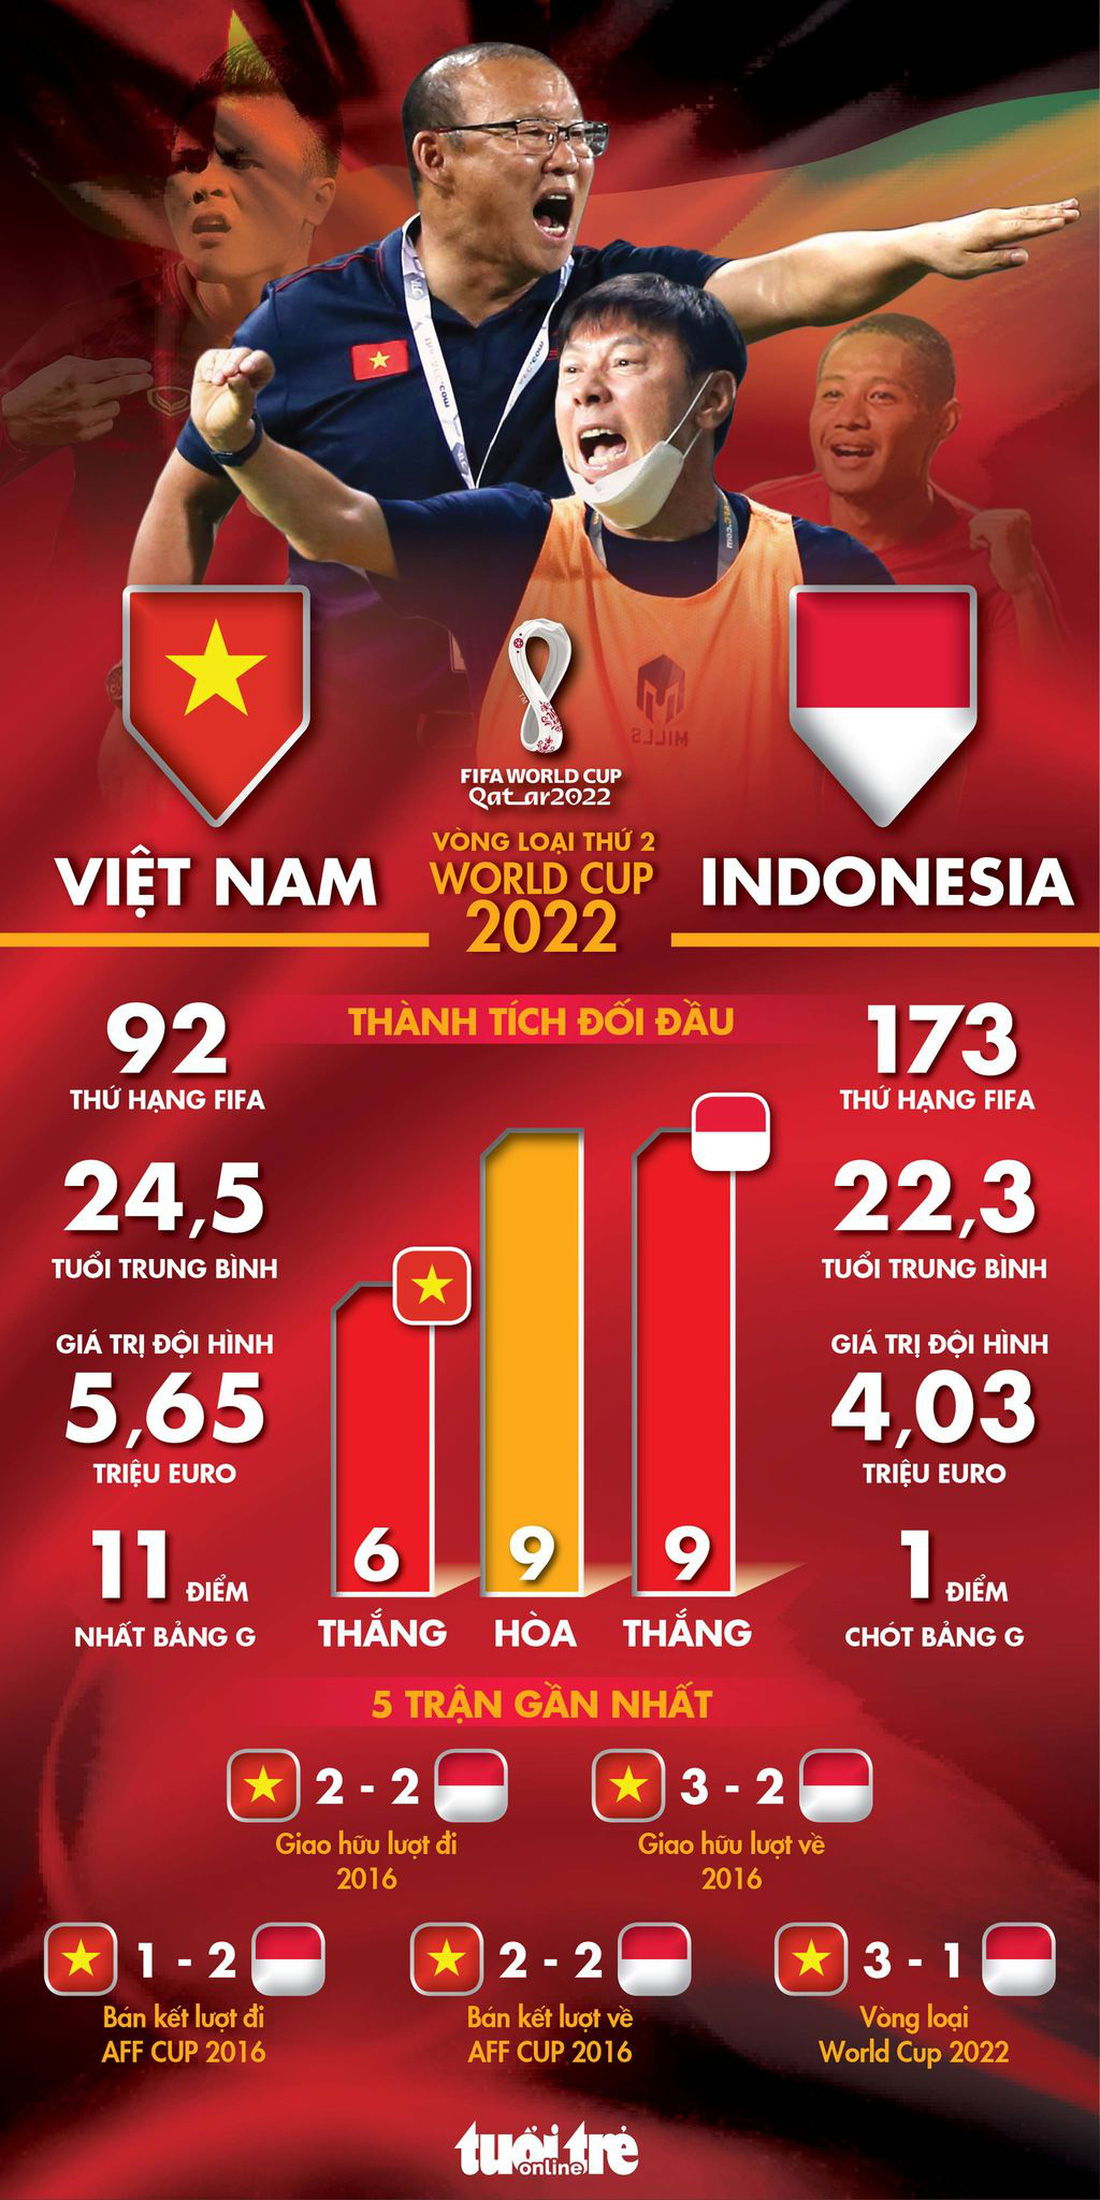 Tương quan sức mạnh giữa tuyển Việt Nam và tuyển Indonesia như thế nào? - Ảnh 1.